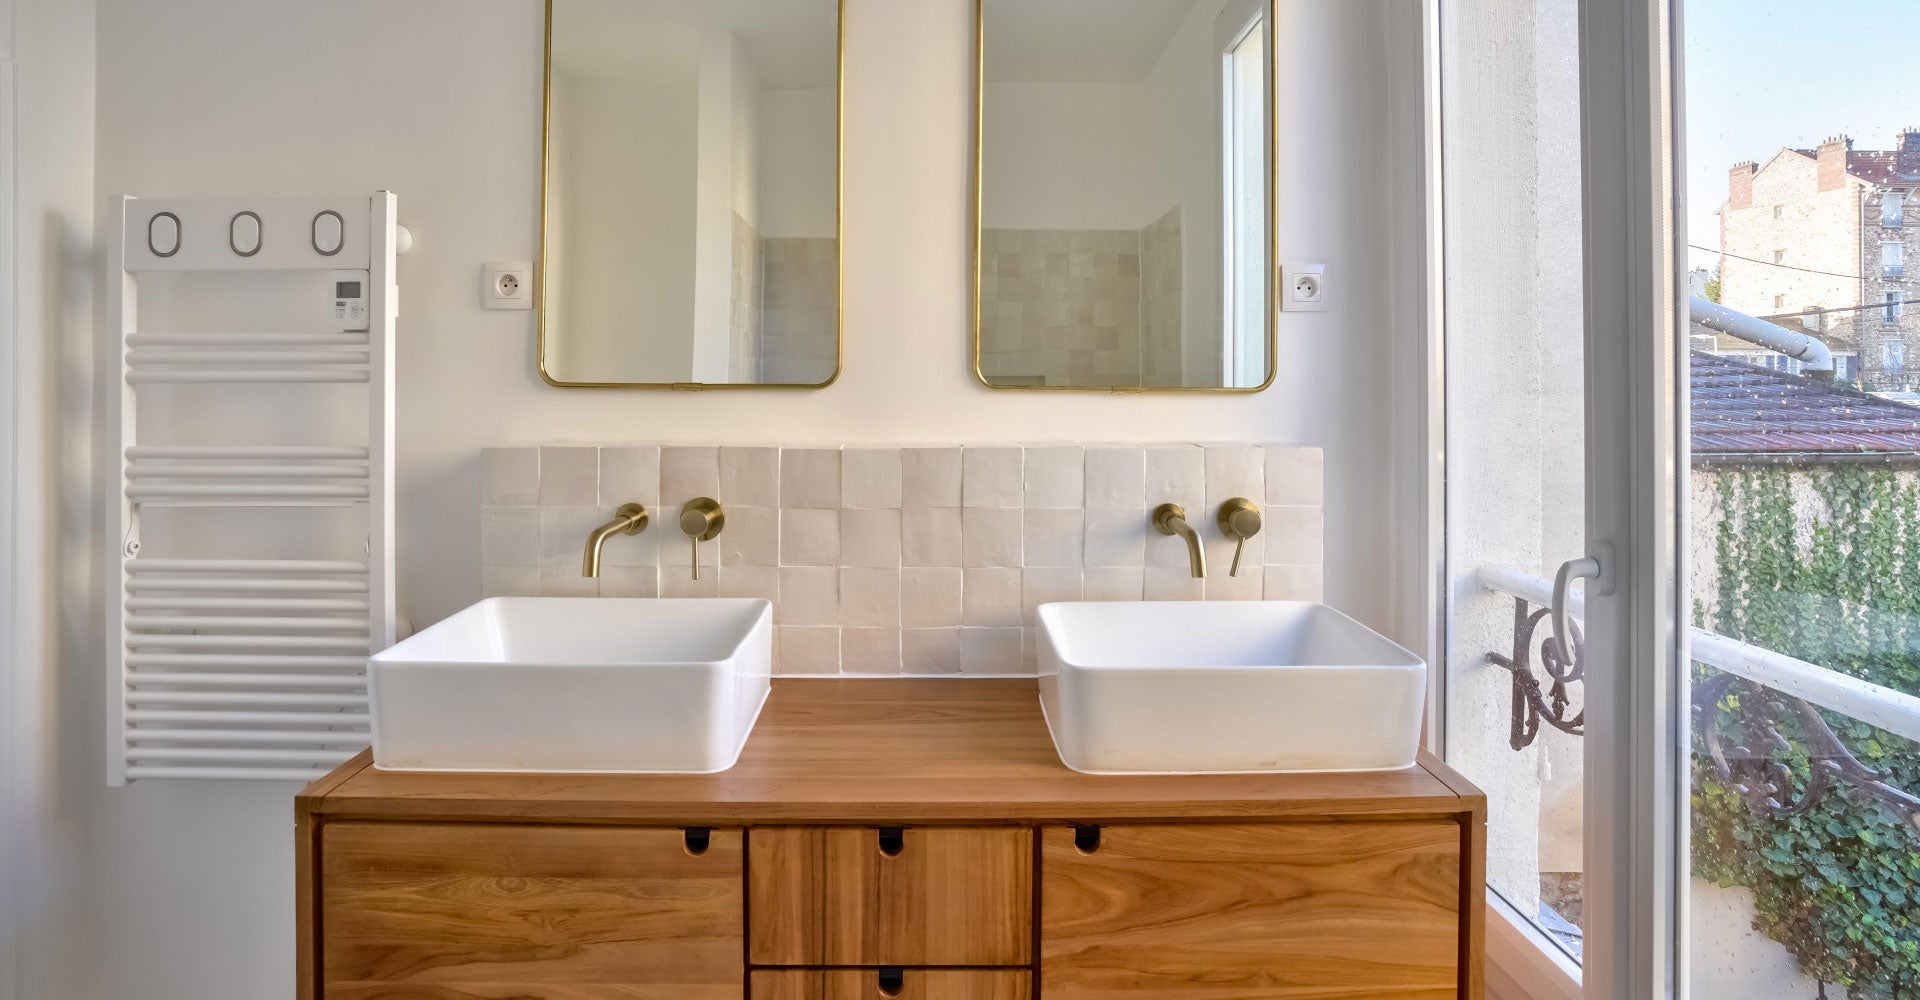 Salle de bains double vasque avec miroirs